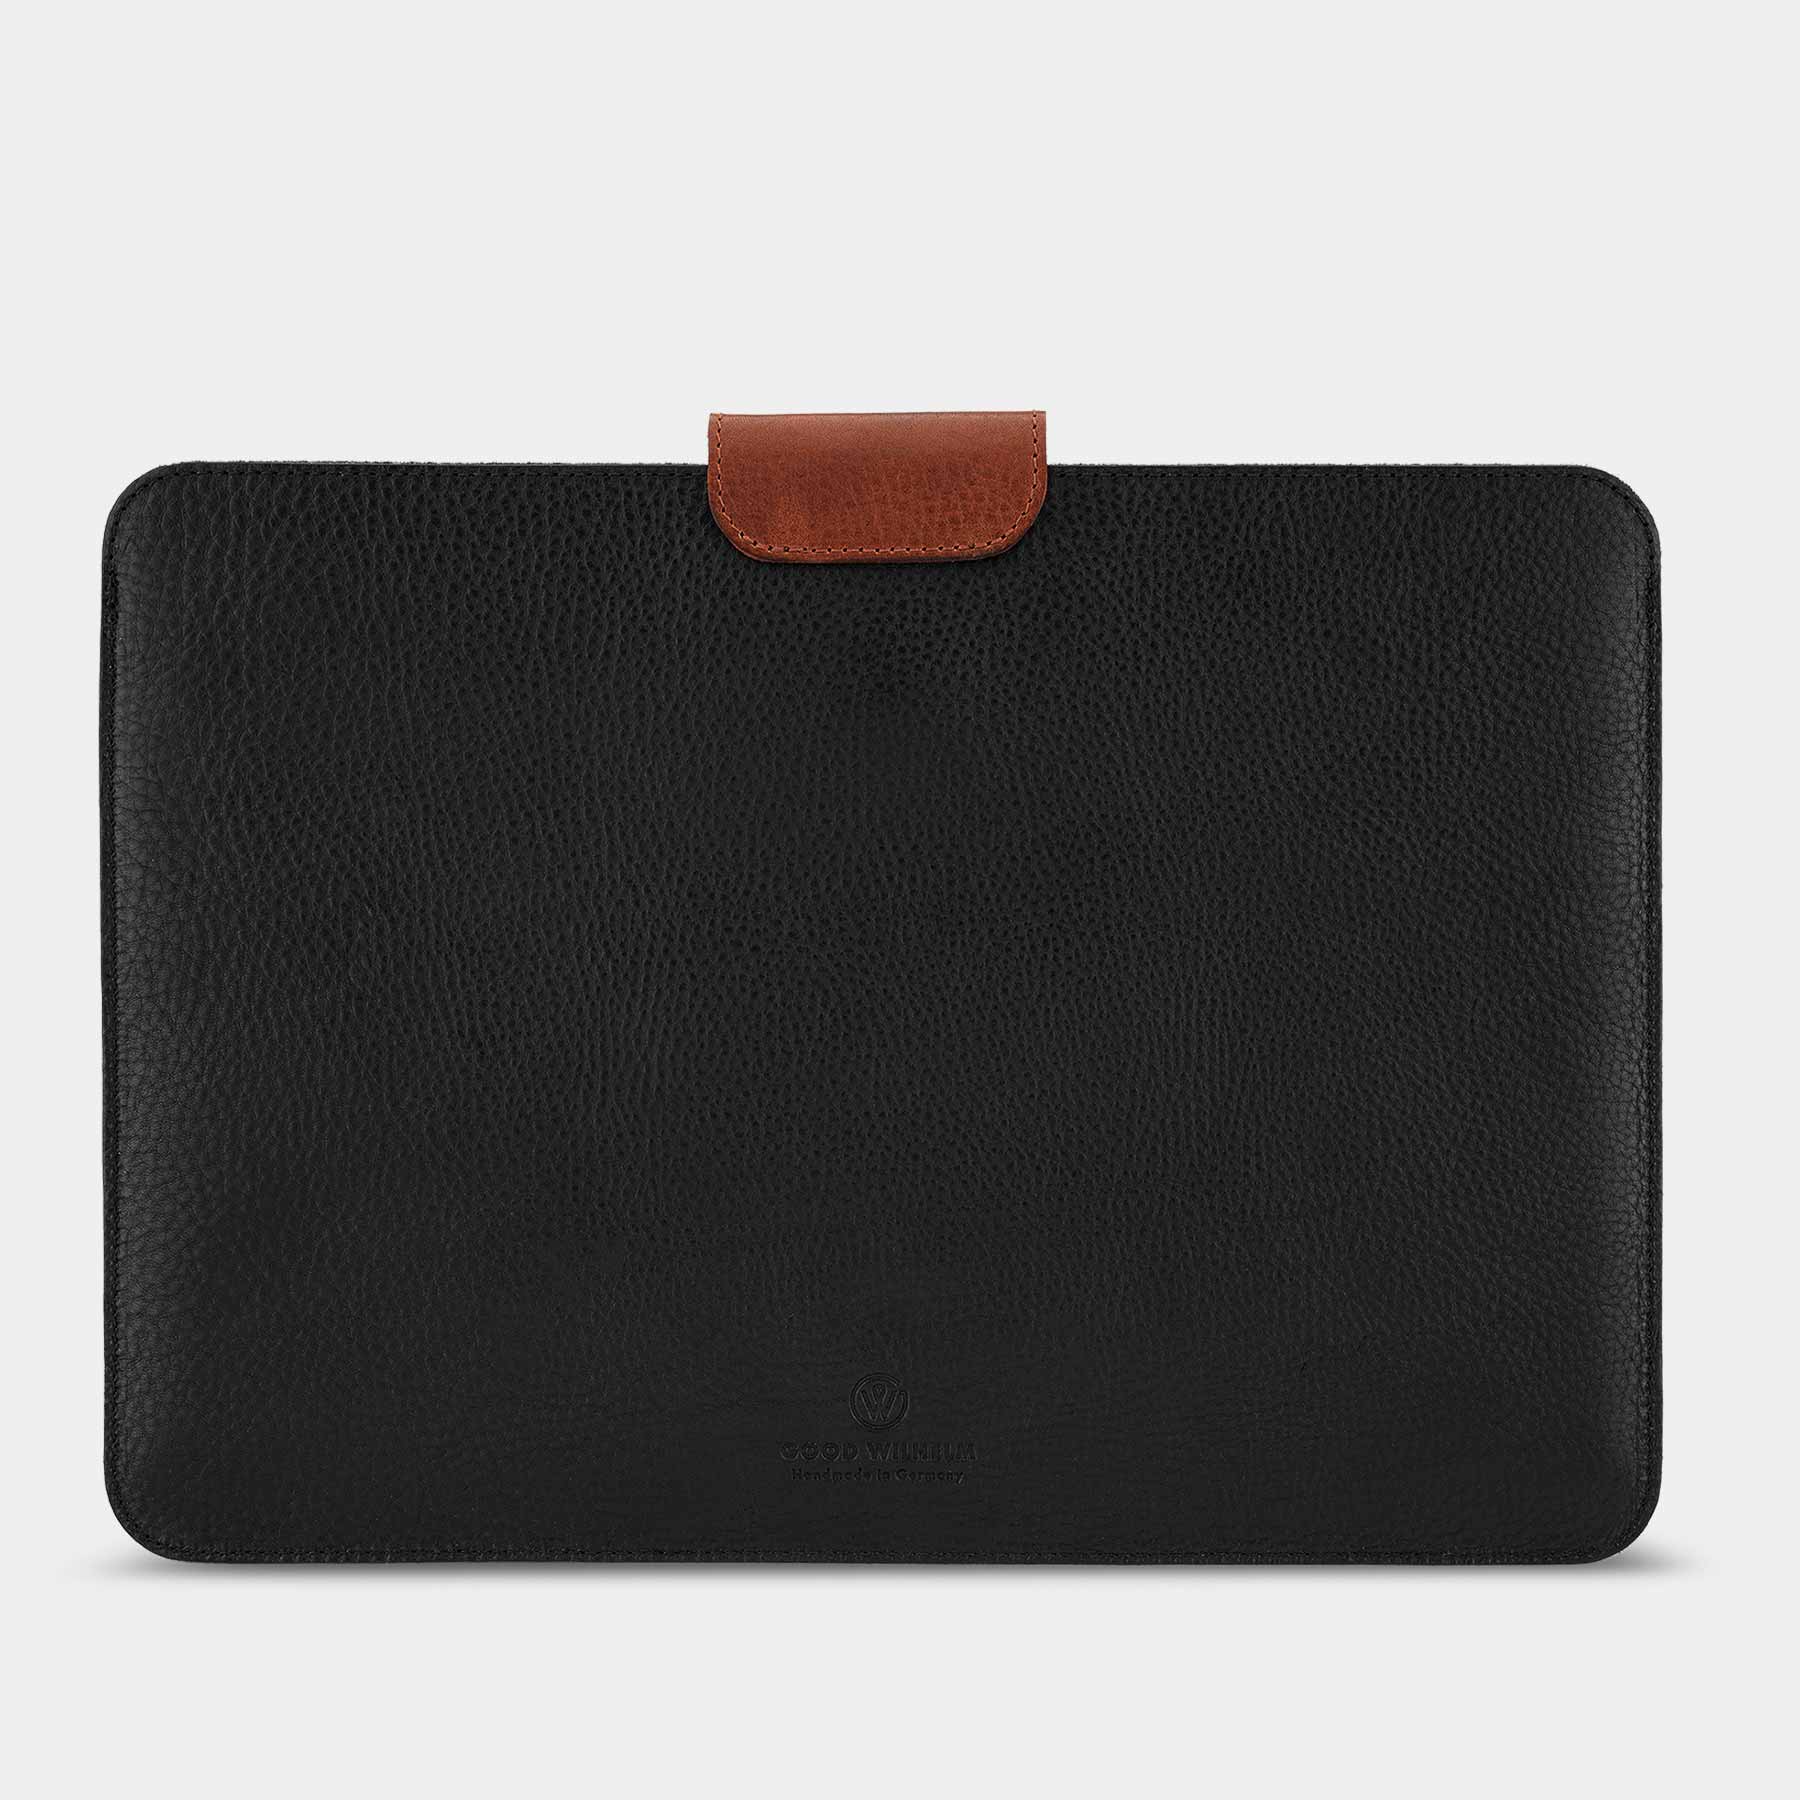 Rückseite der MacBook Pro Hülle LUDWIG von Goodwilhelm in der Farbe black